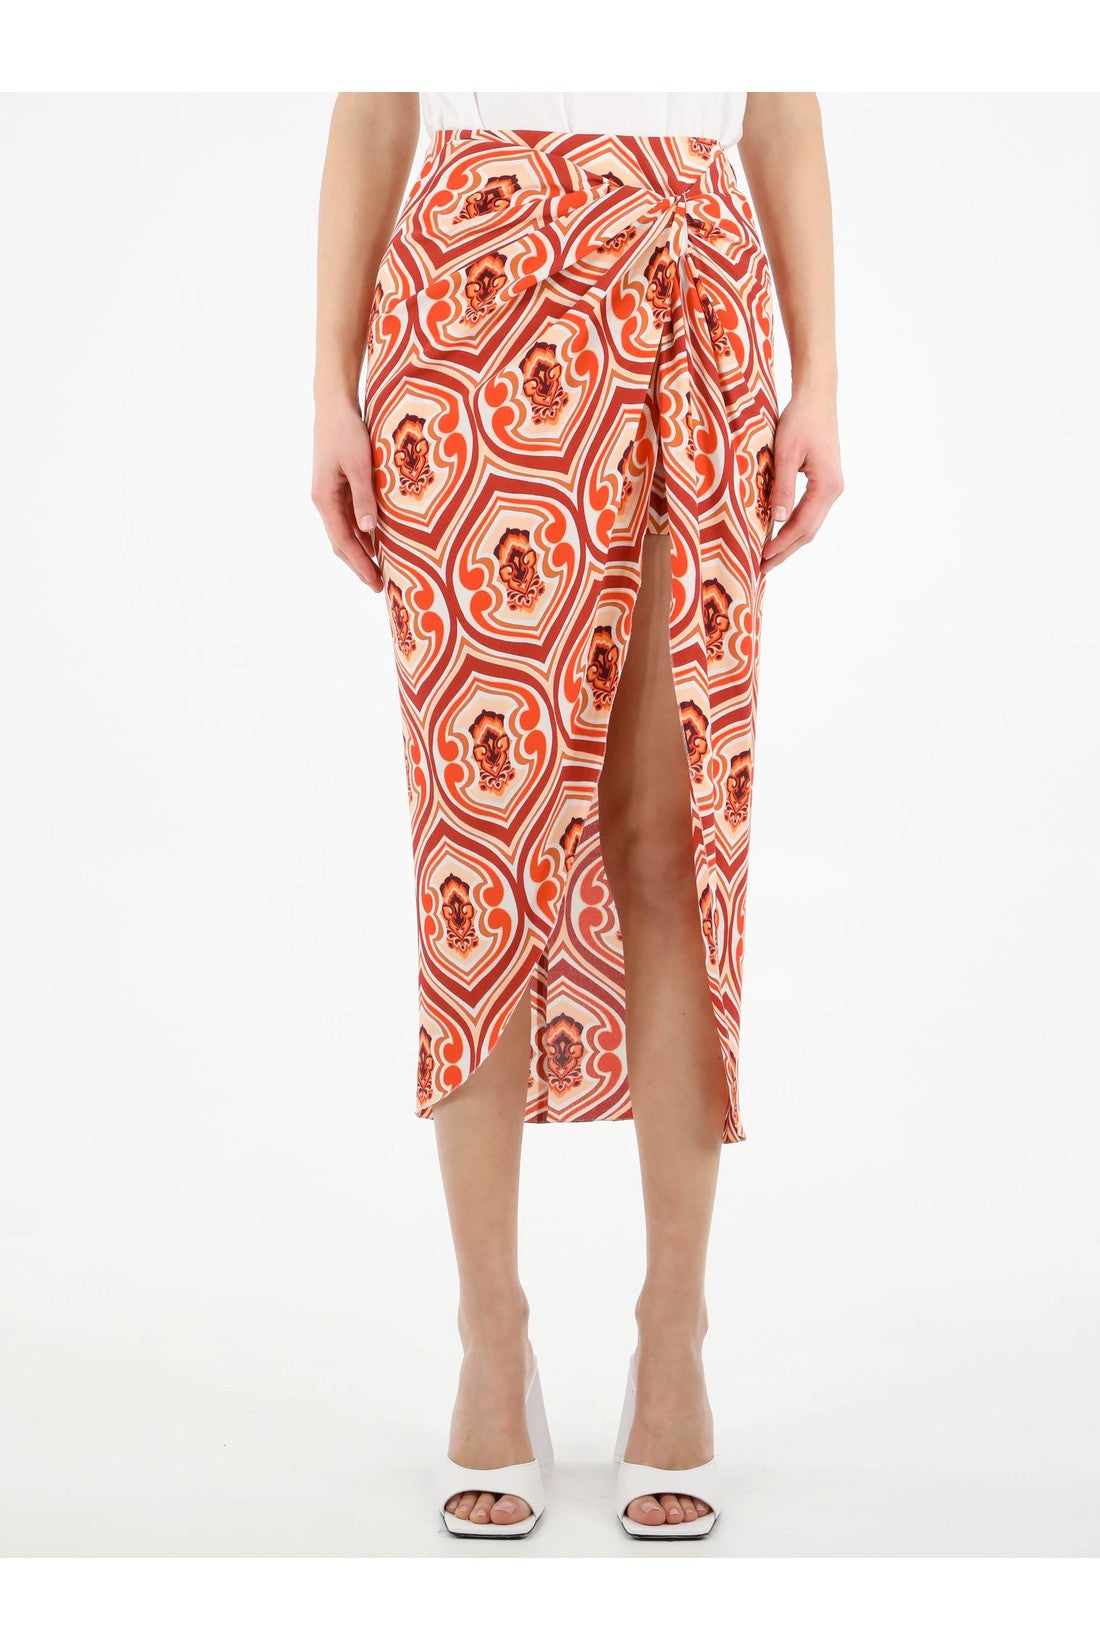 Sarong skirt with graphic print